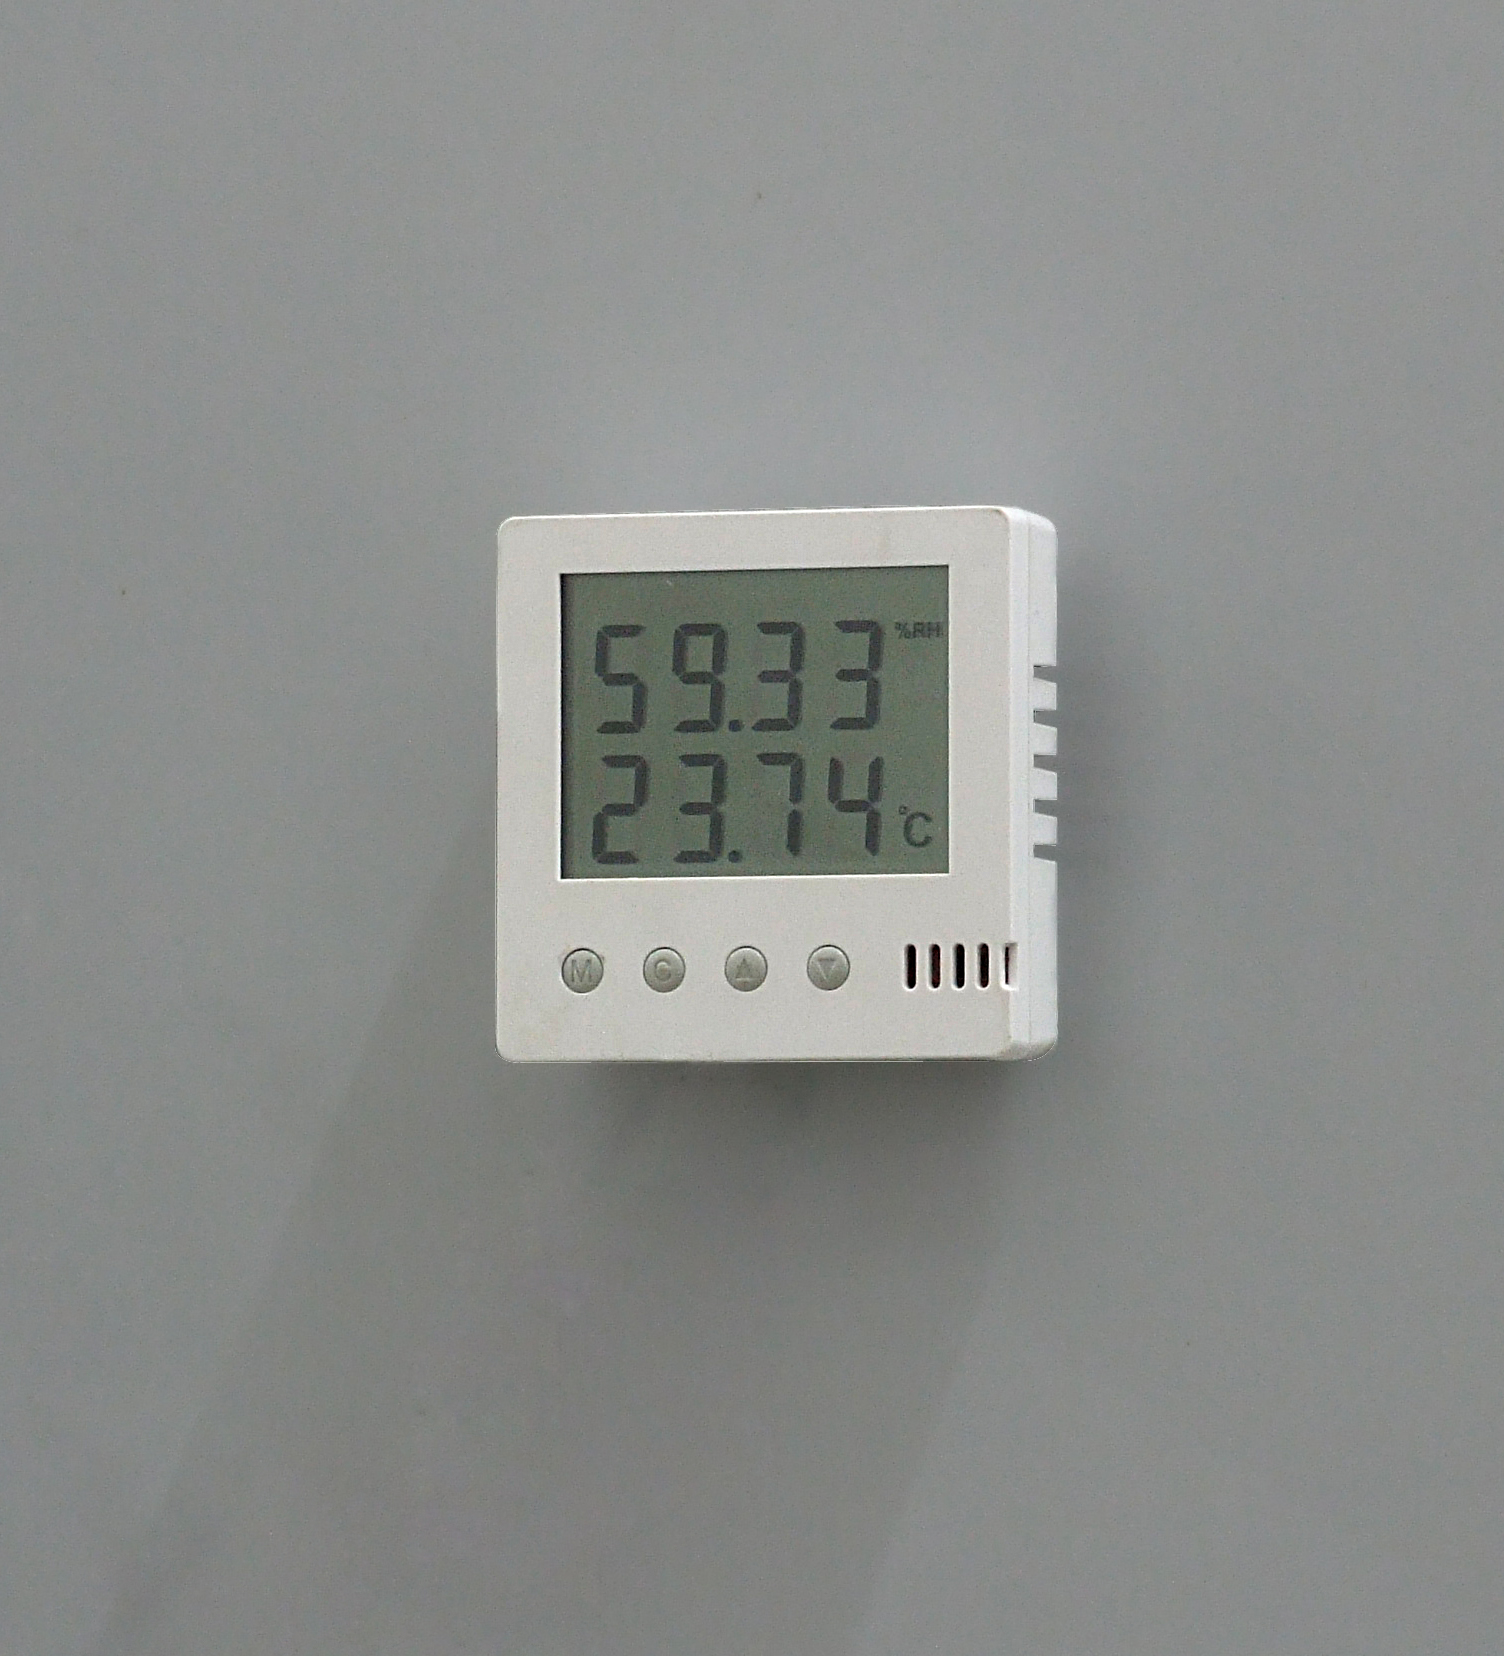 动环监测设备配套温湿度传感器 瑞士进口芯片 RS485接口图片